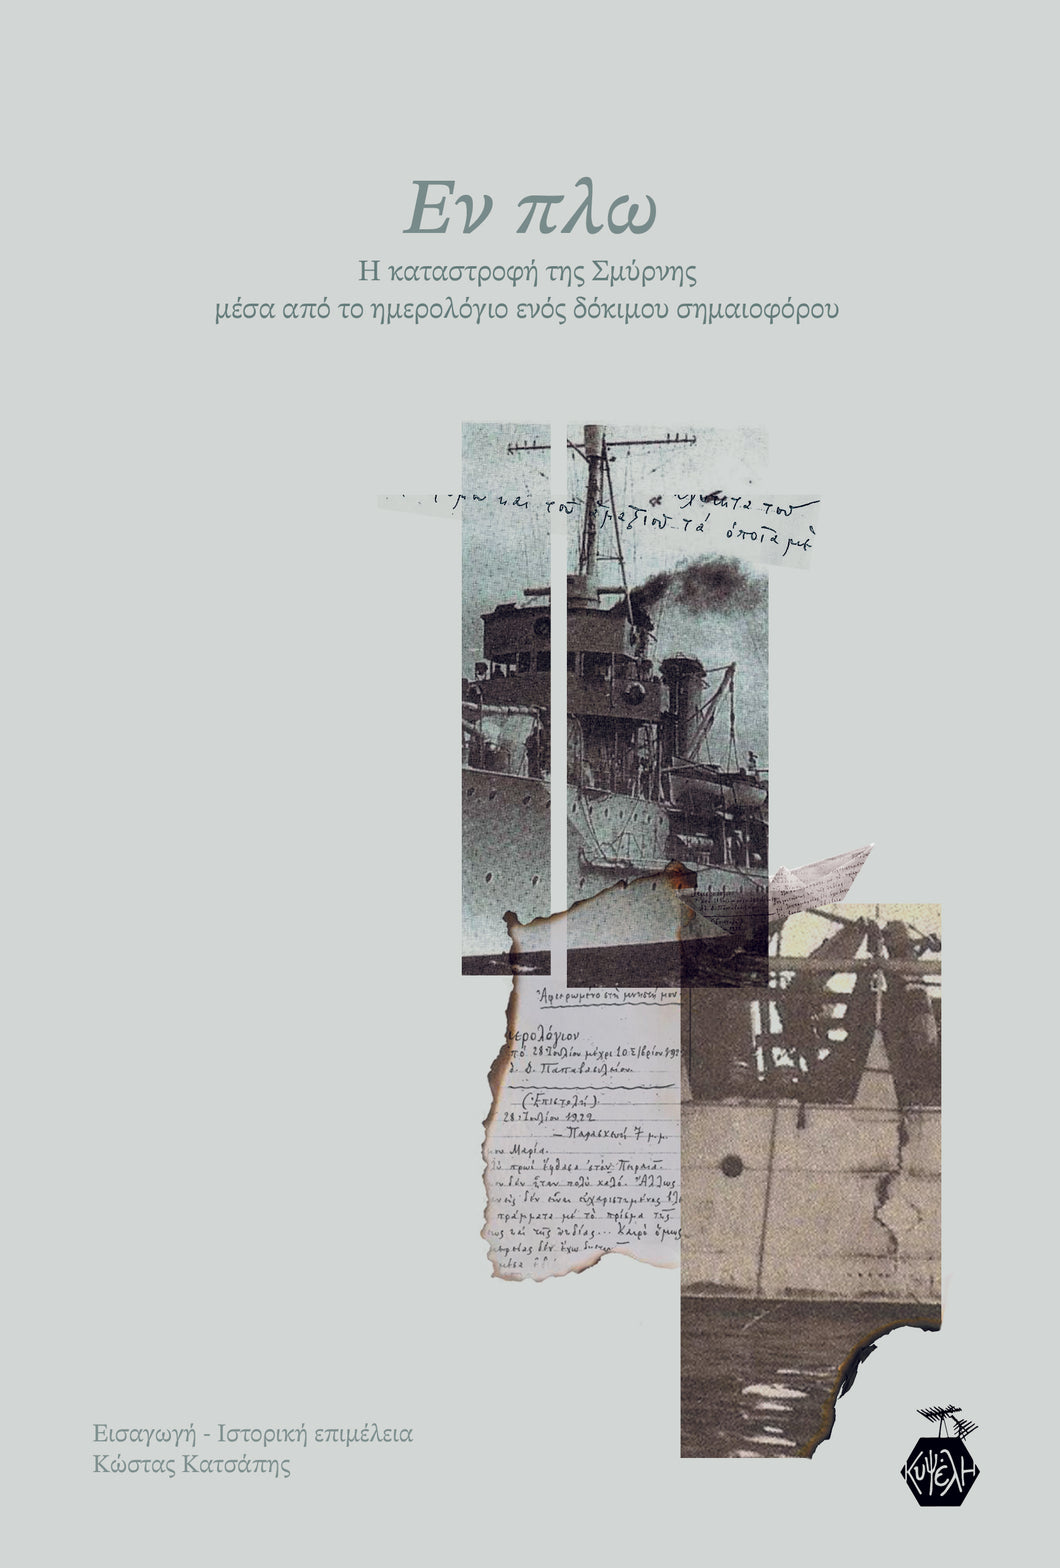 Εν πλω: Η καταστροφή της Σμύρνης μέσα από το ημερολόγιο ενός δόκιμου σημαιοφόρου (Εισαγωγή-Ιστορική επιμέλεια: Κώστας Κατσάπης)